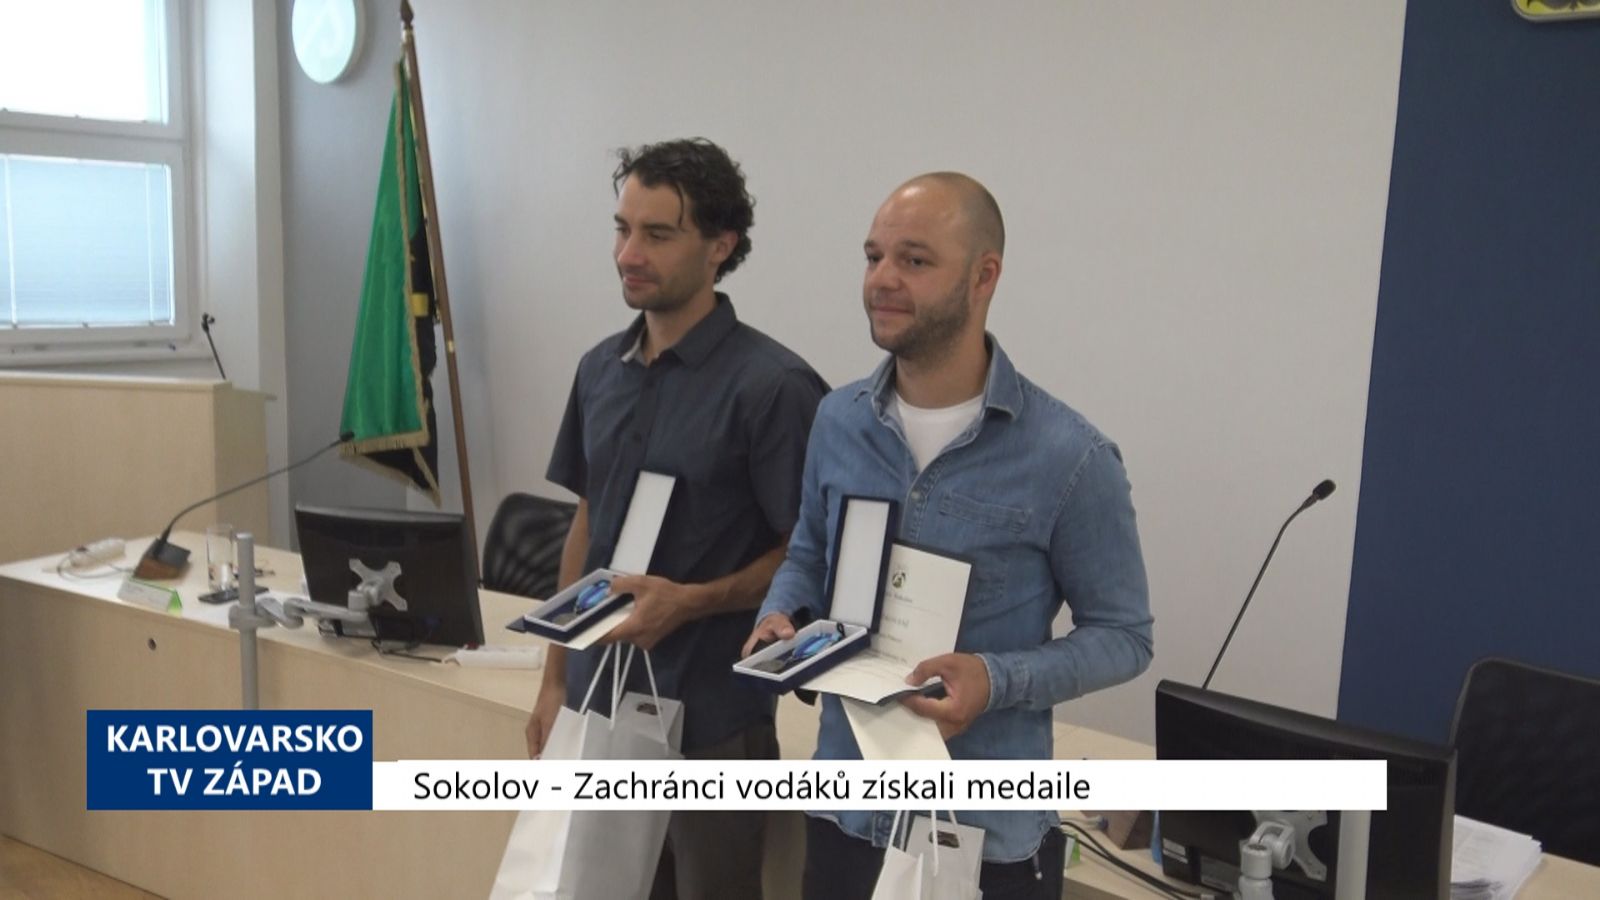 Sokolov: Zachránci vodáků získali medaile (TV Západ)